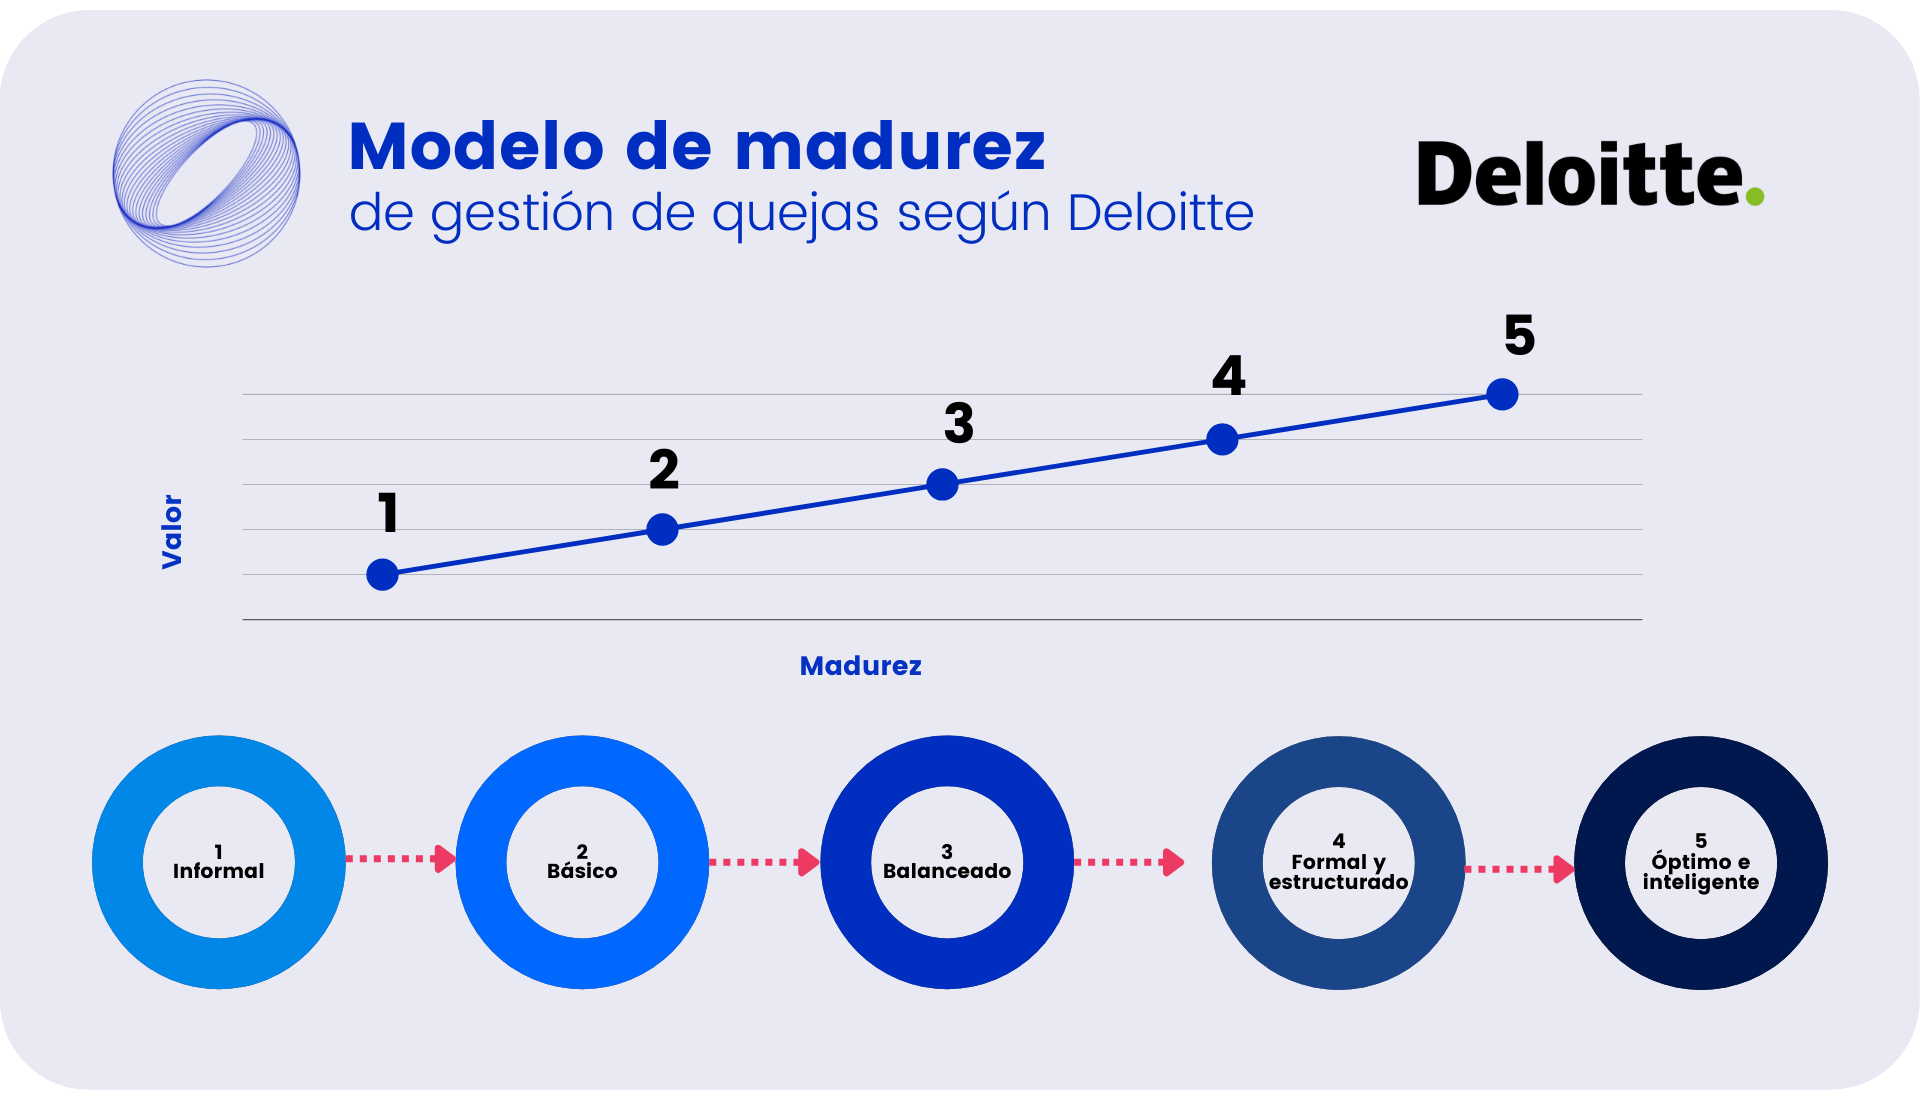 Modelo de madurez de gestión de quejas según Deloitte 